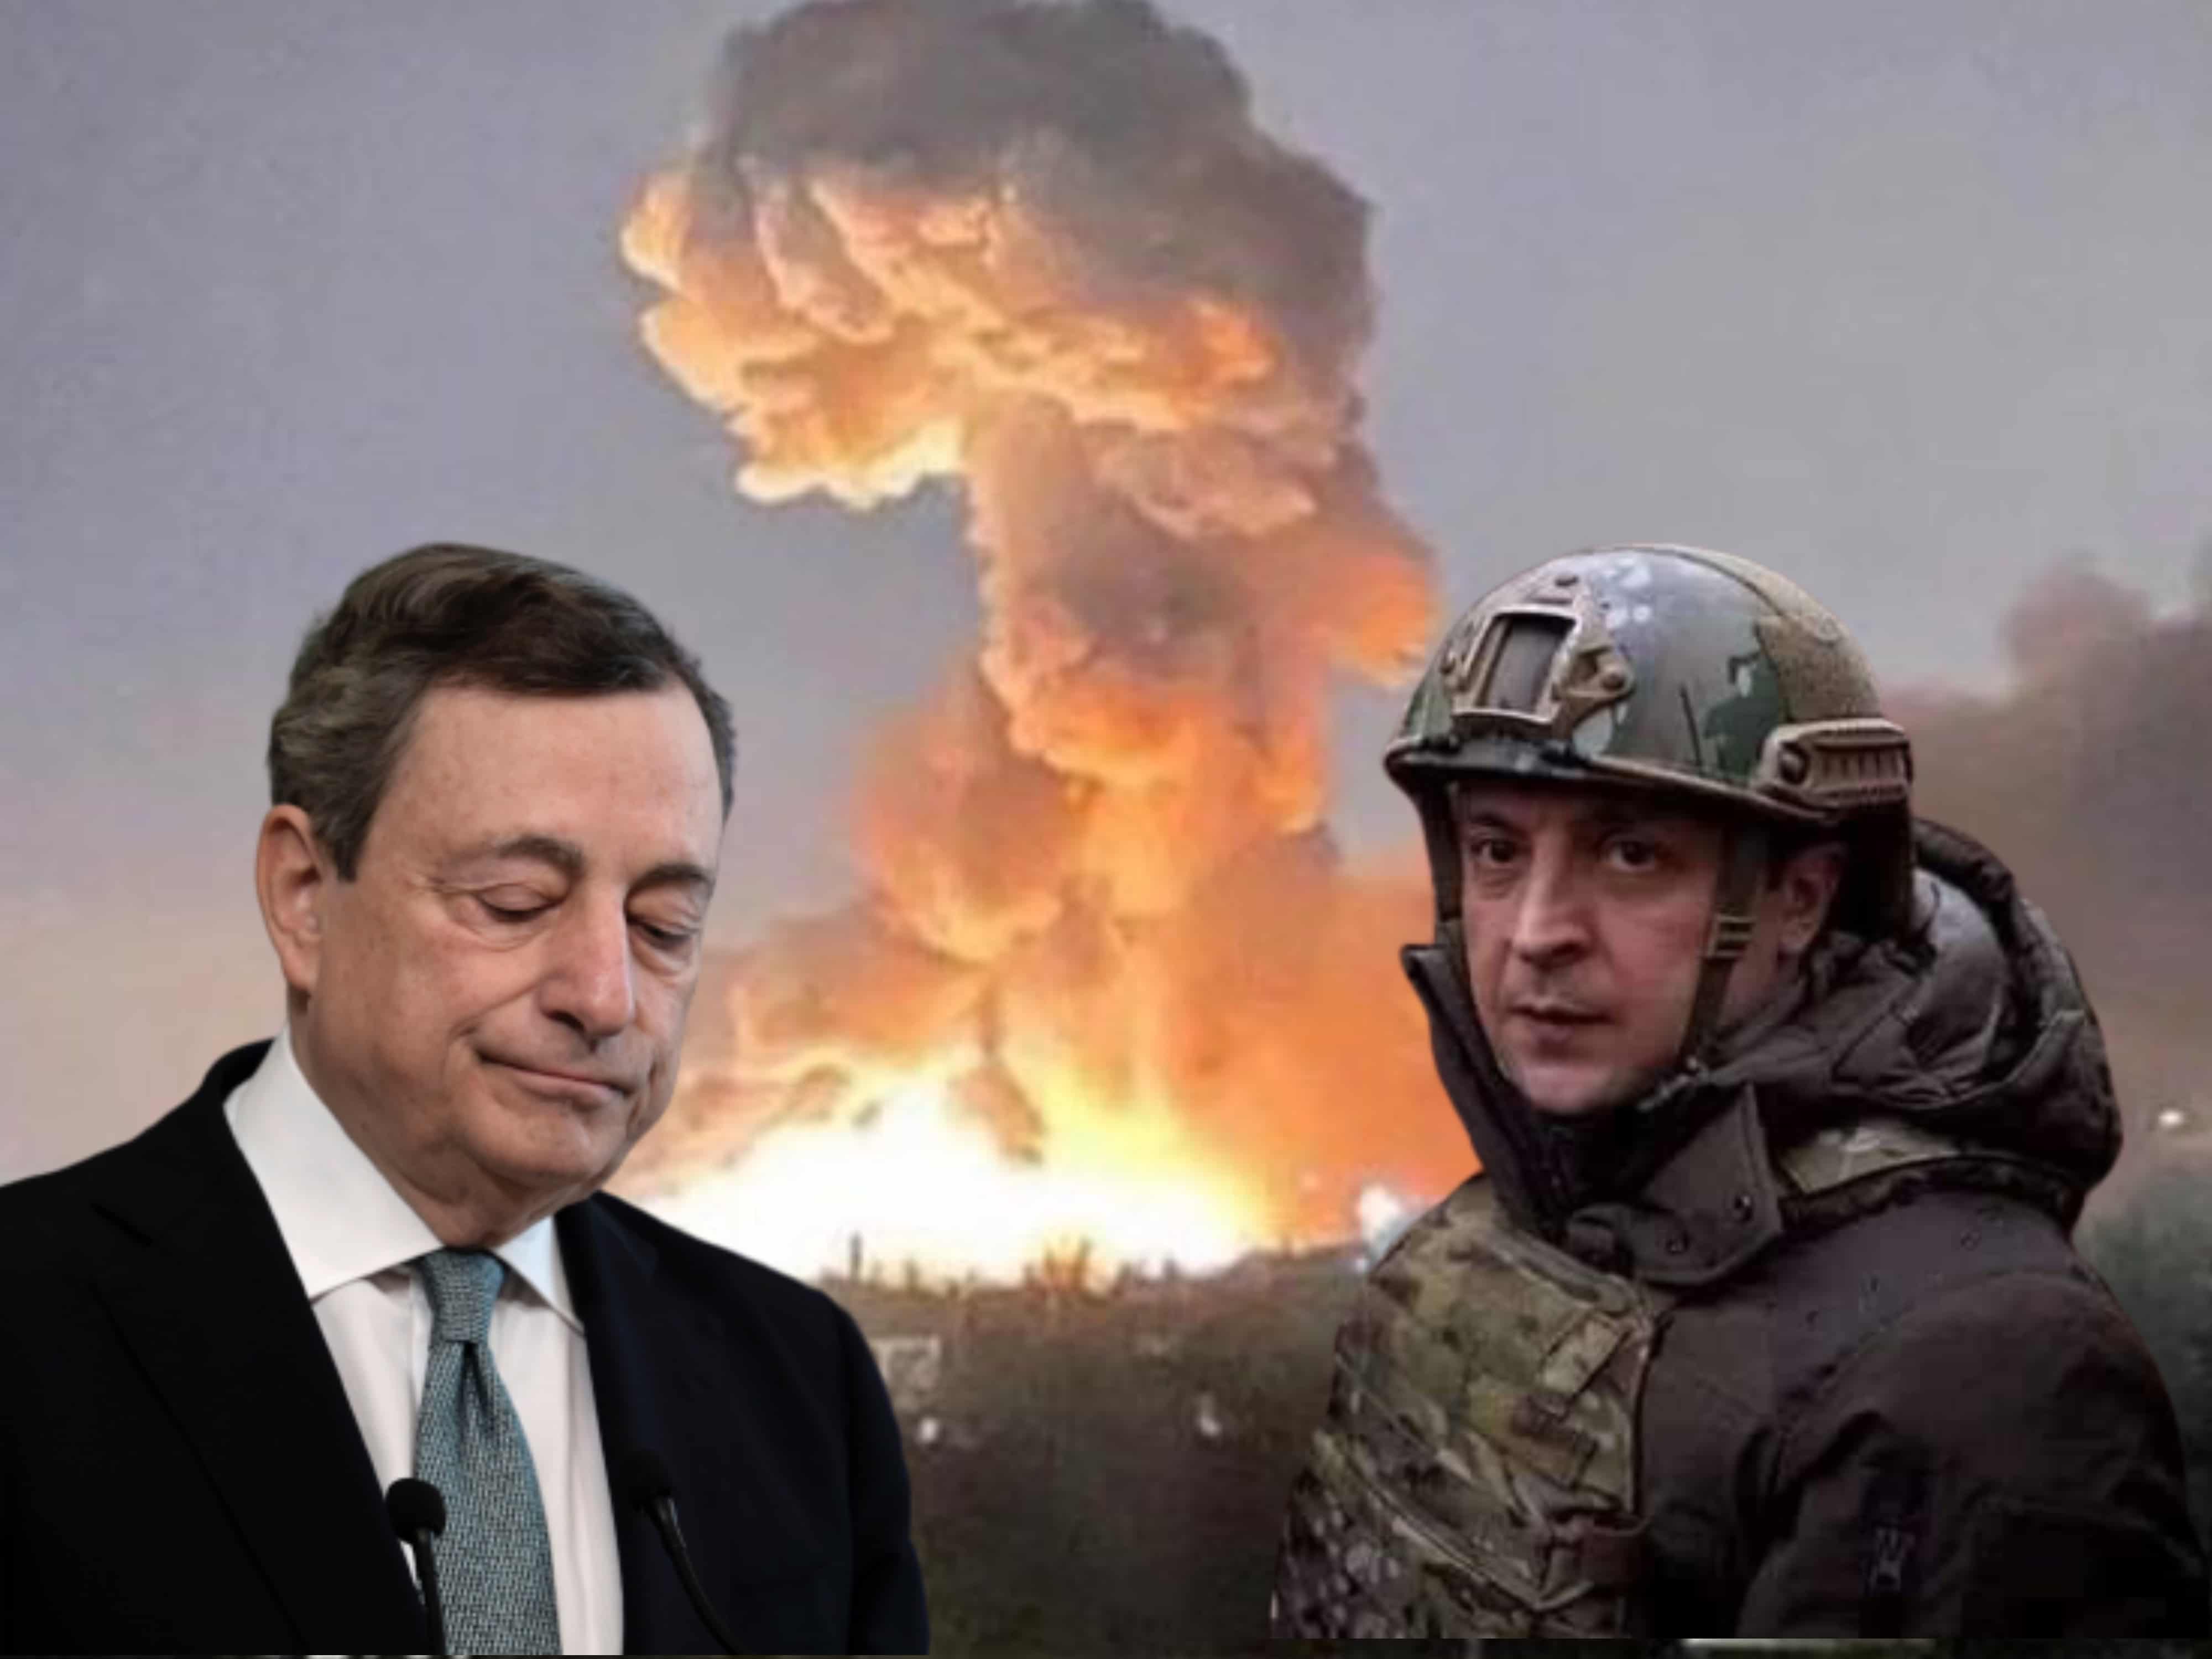 Guerra in Ucraina. Povero Zelensky: oltre a fronteggiare Putin, deve pensare a fare pace con Draghi